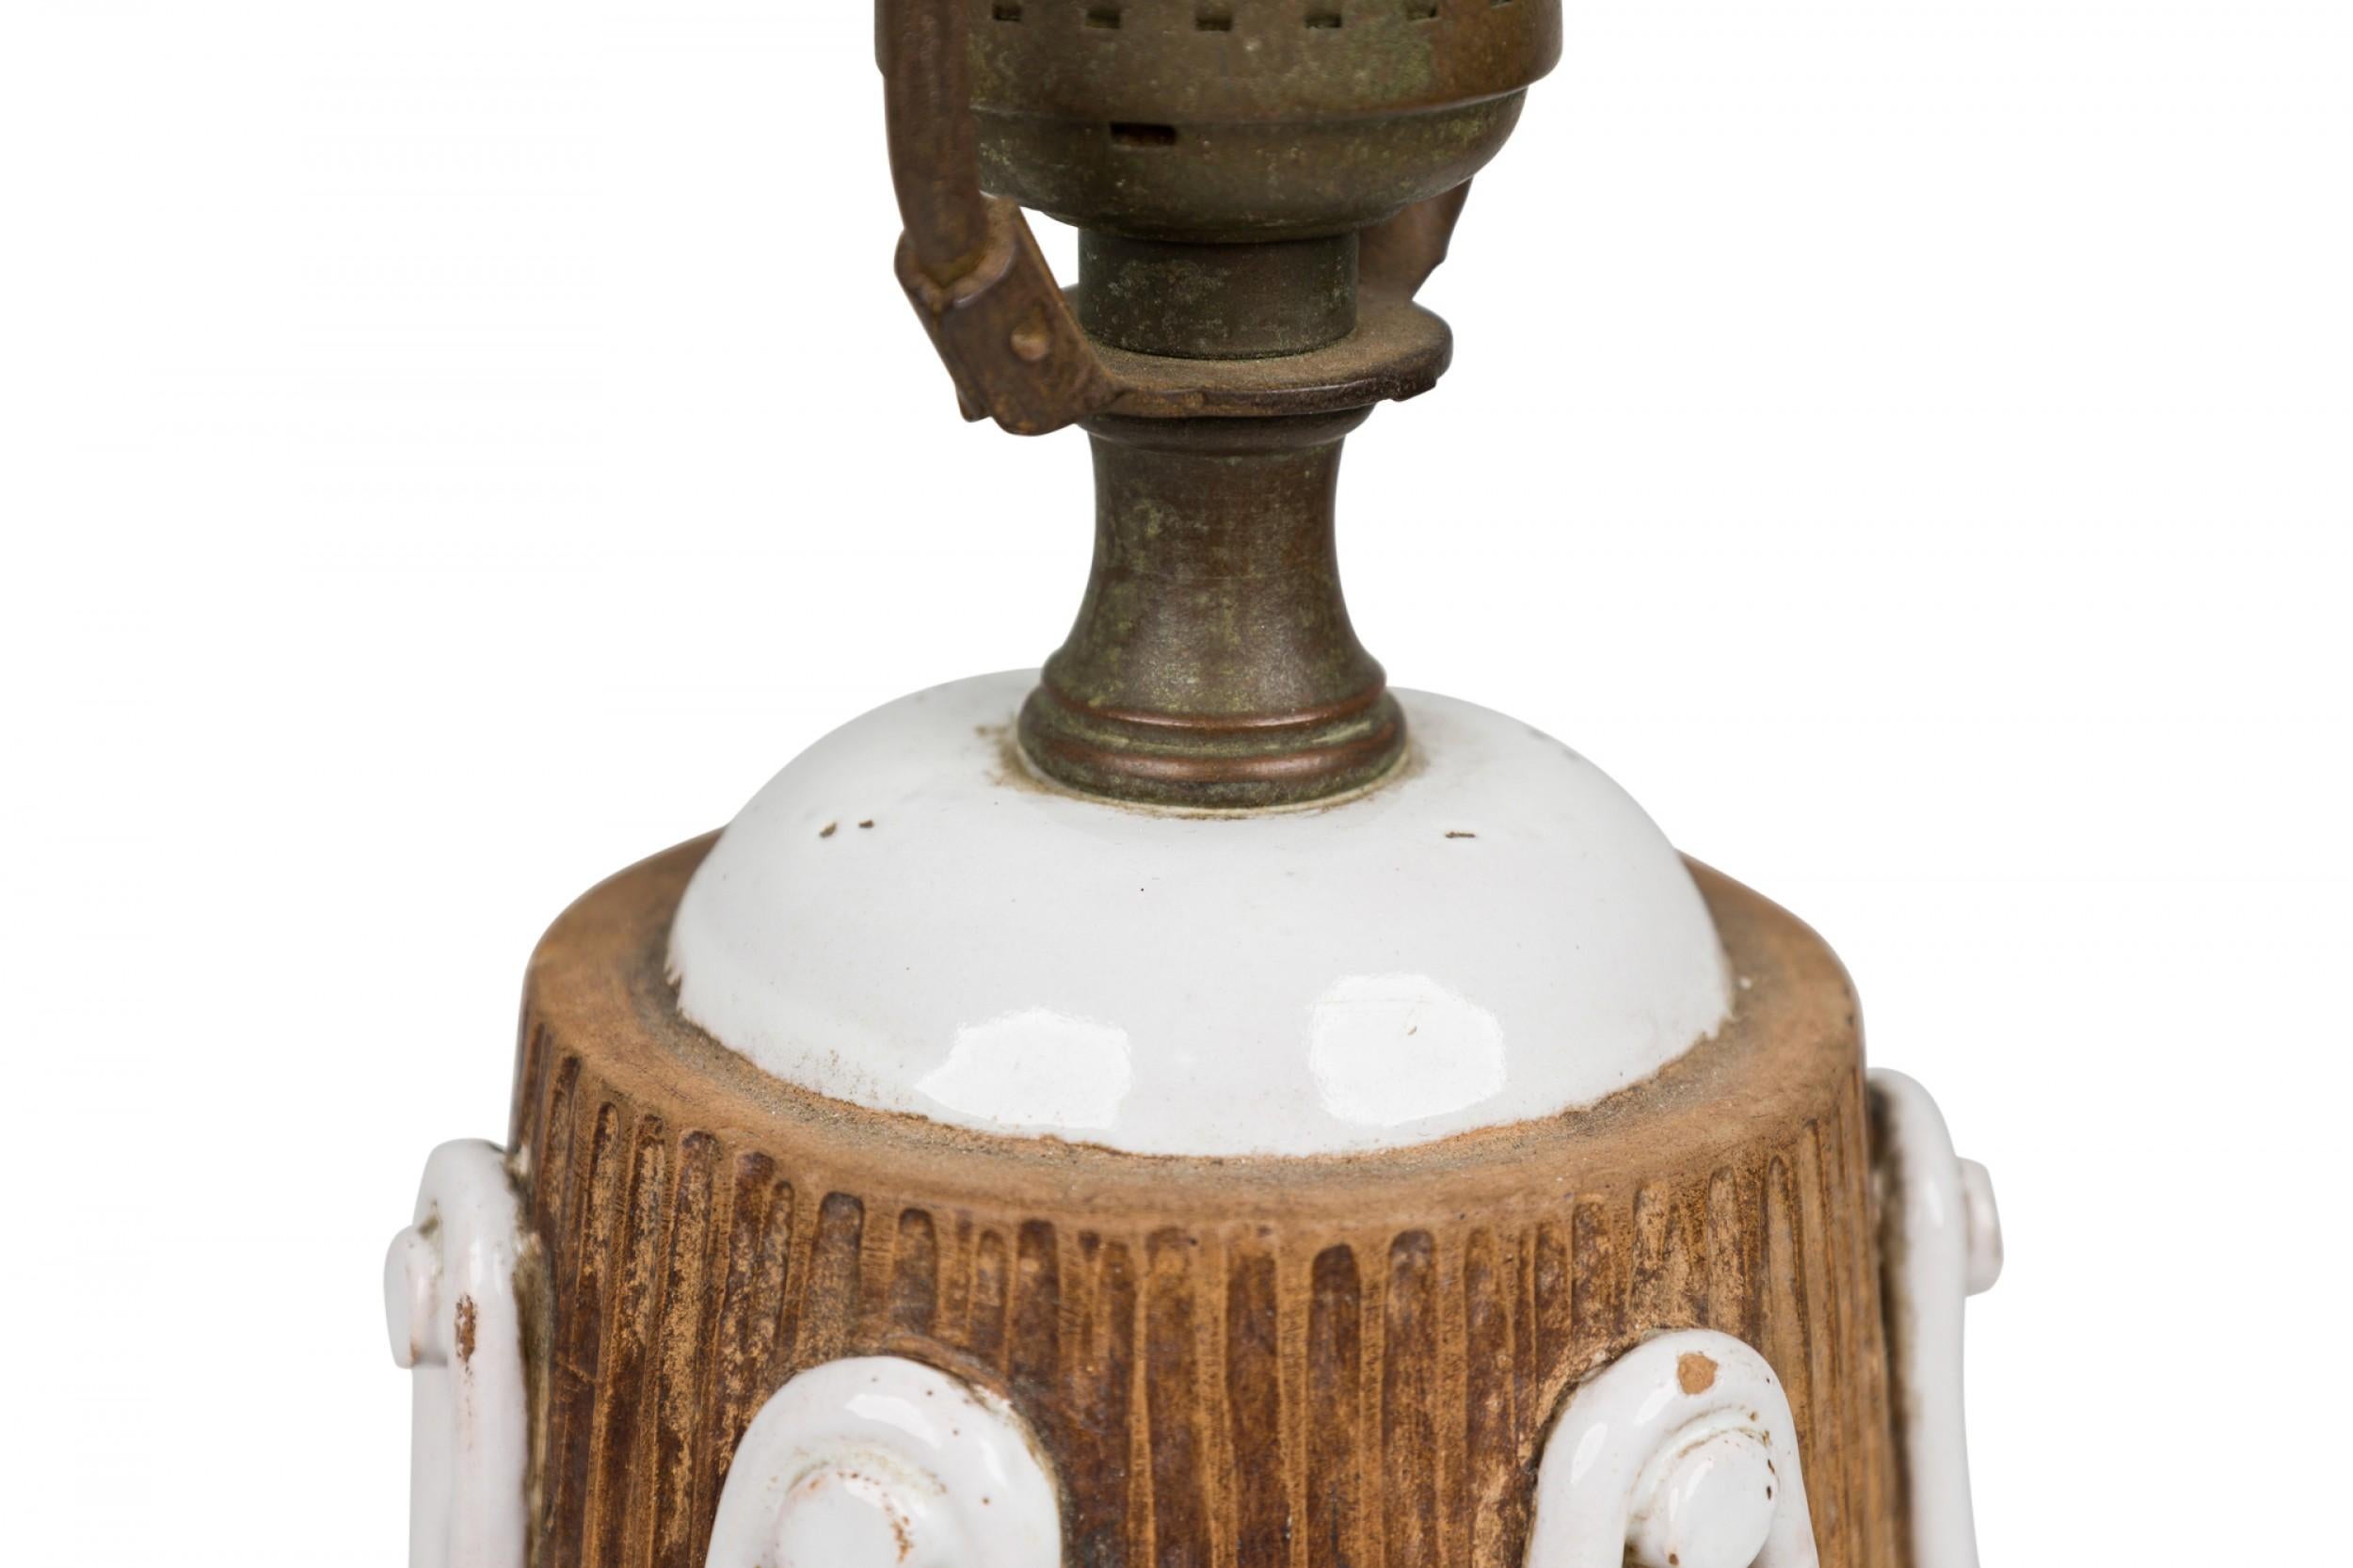 PAIRE de lampes de table italiennes du milieu du siècle en céramique de forme conique effilée avec des chapeaux en dôme émaillés blancs, des prises d'interrupteur et des harpes en laiton, les corps nervurés cuits dans une glaçure brune mate et